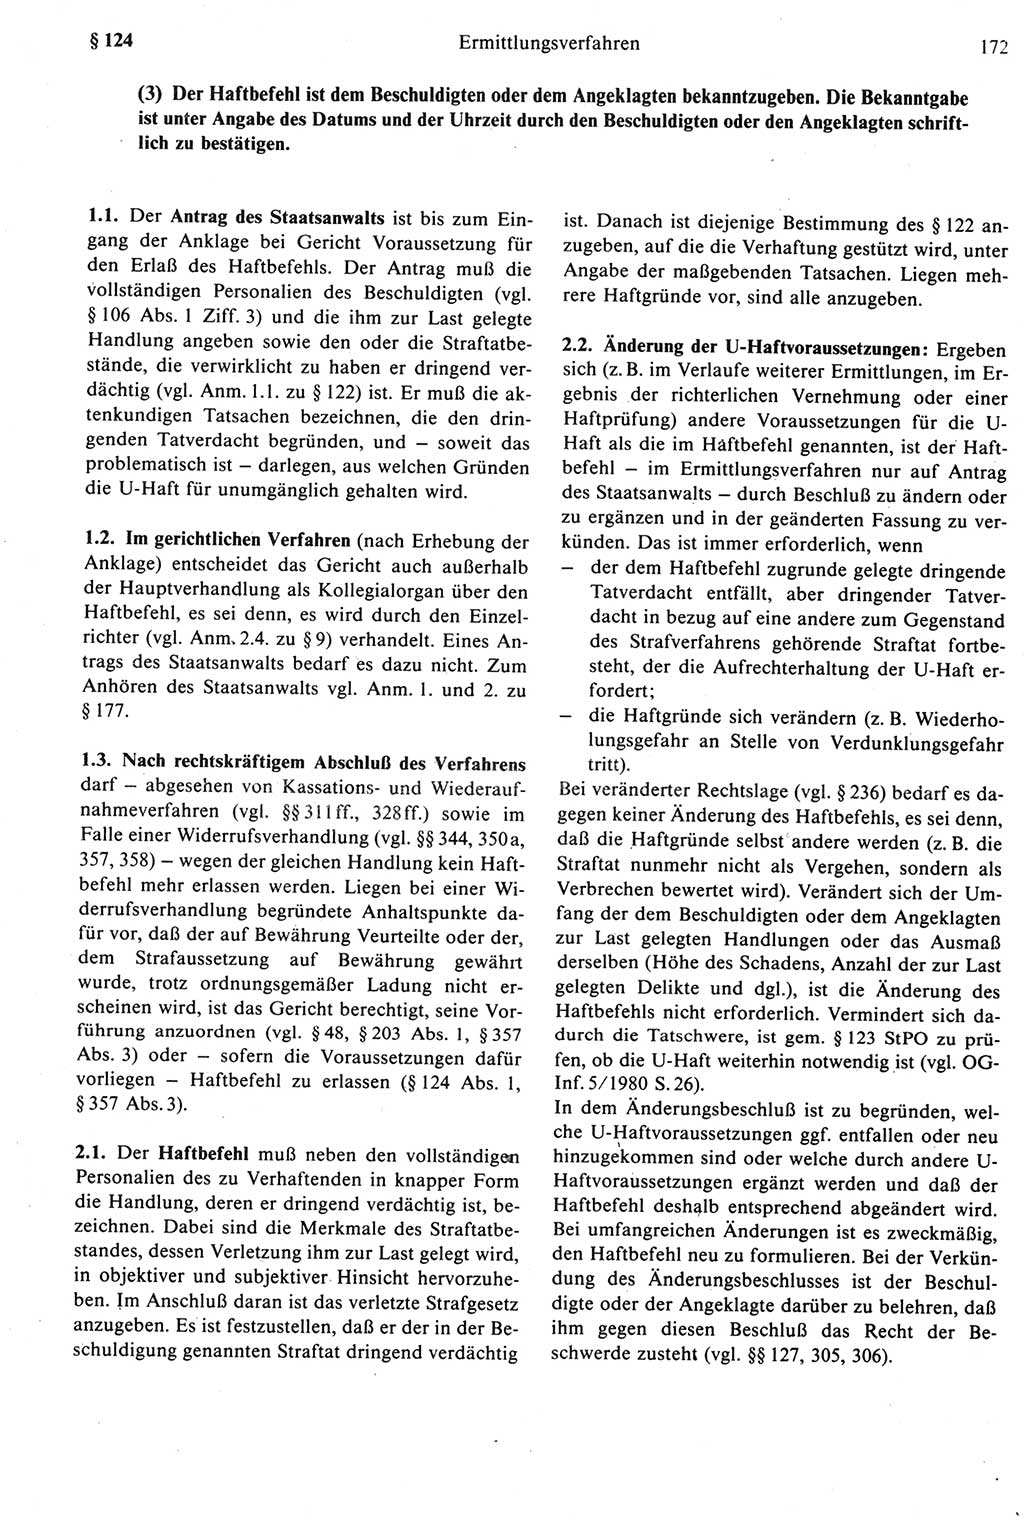 Strafprozeßrecht der DDR [Deutsche Demokratische Republik], Kommentar zur Strafprozeßordnung (StPO) 1987, Seite 172 (Strafprozeßr. DDR Komm. StPO 1987, S. 172)